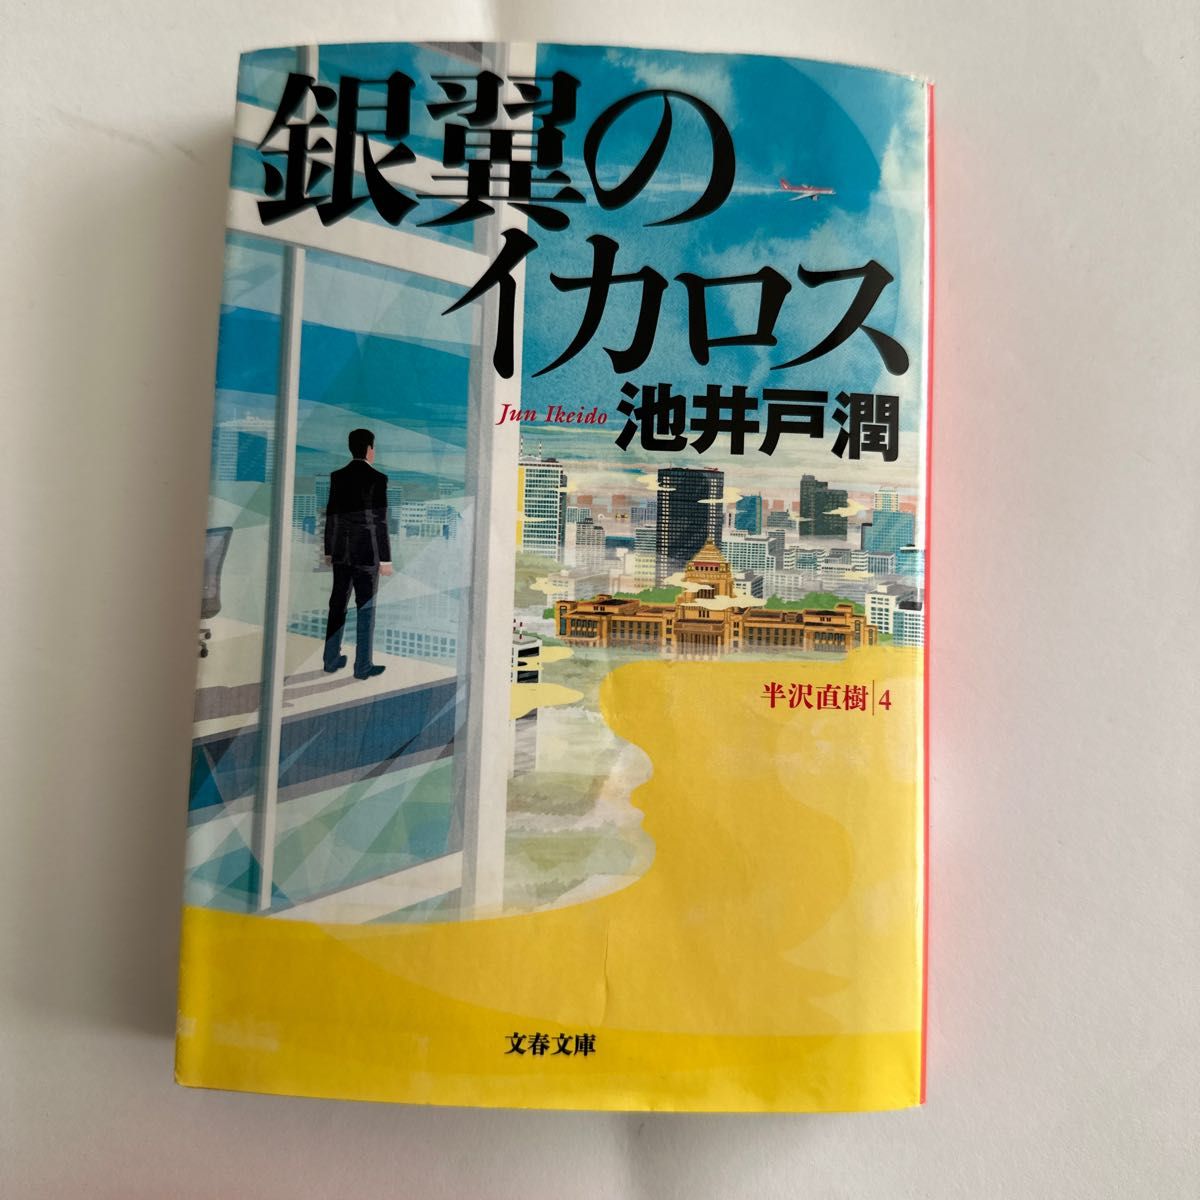 東野圭吾　ナミヤ雑貨店の奇蹟　虚像の道化師　銀翼のイカロス　3冊